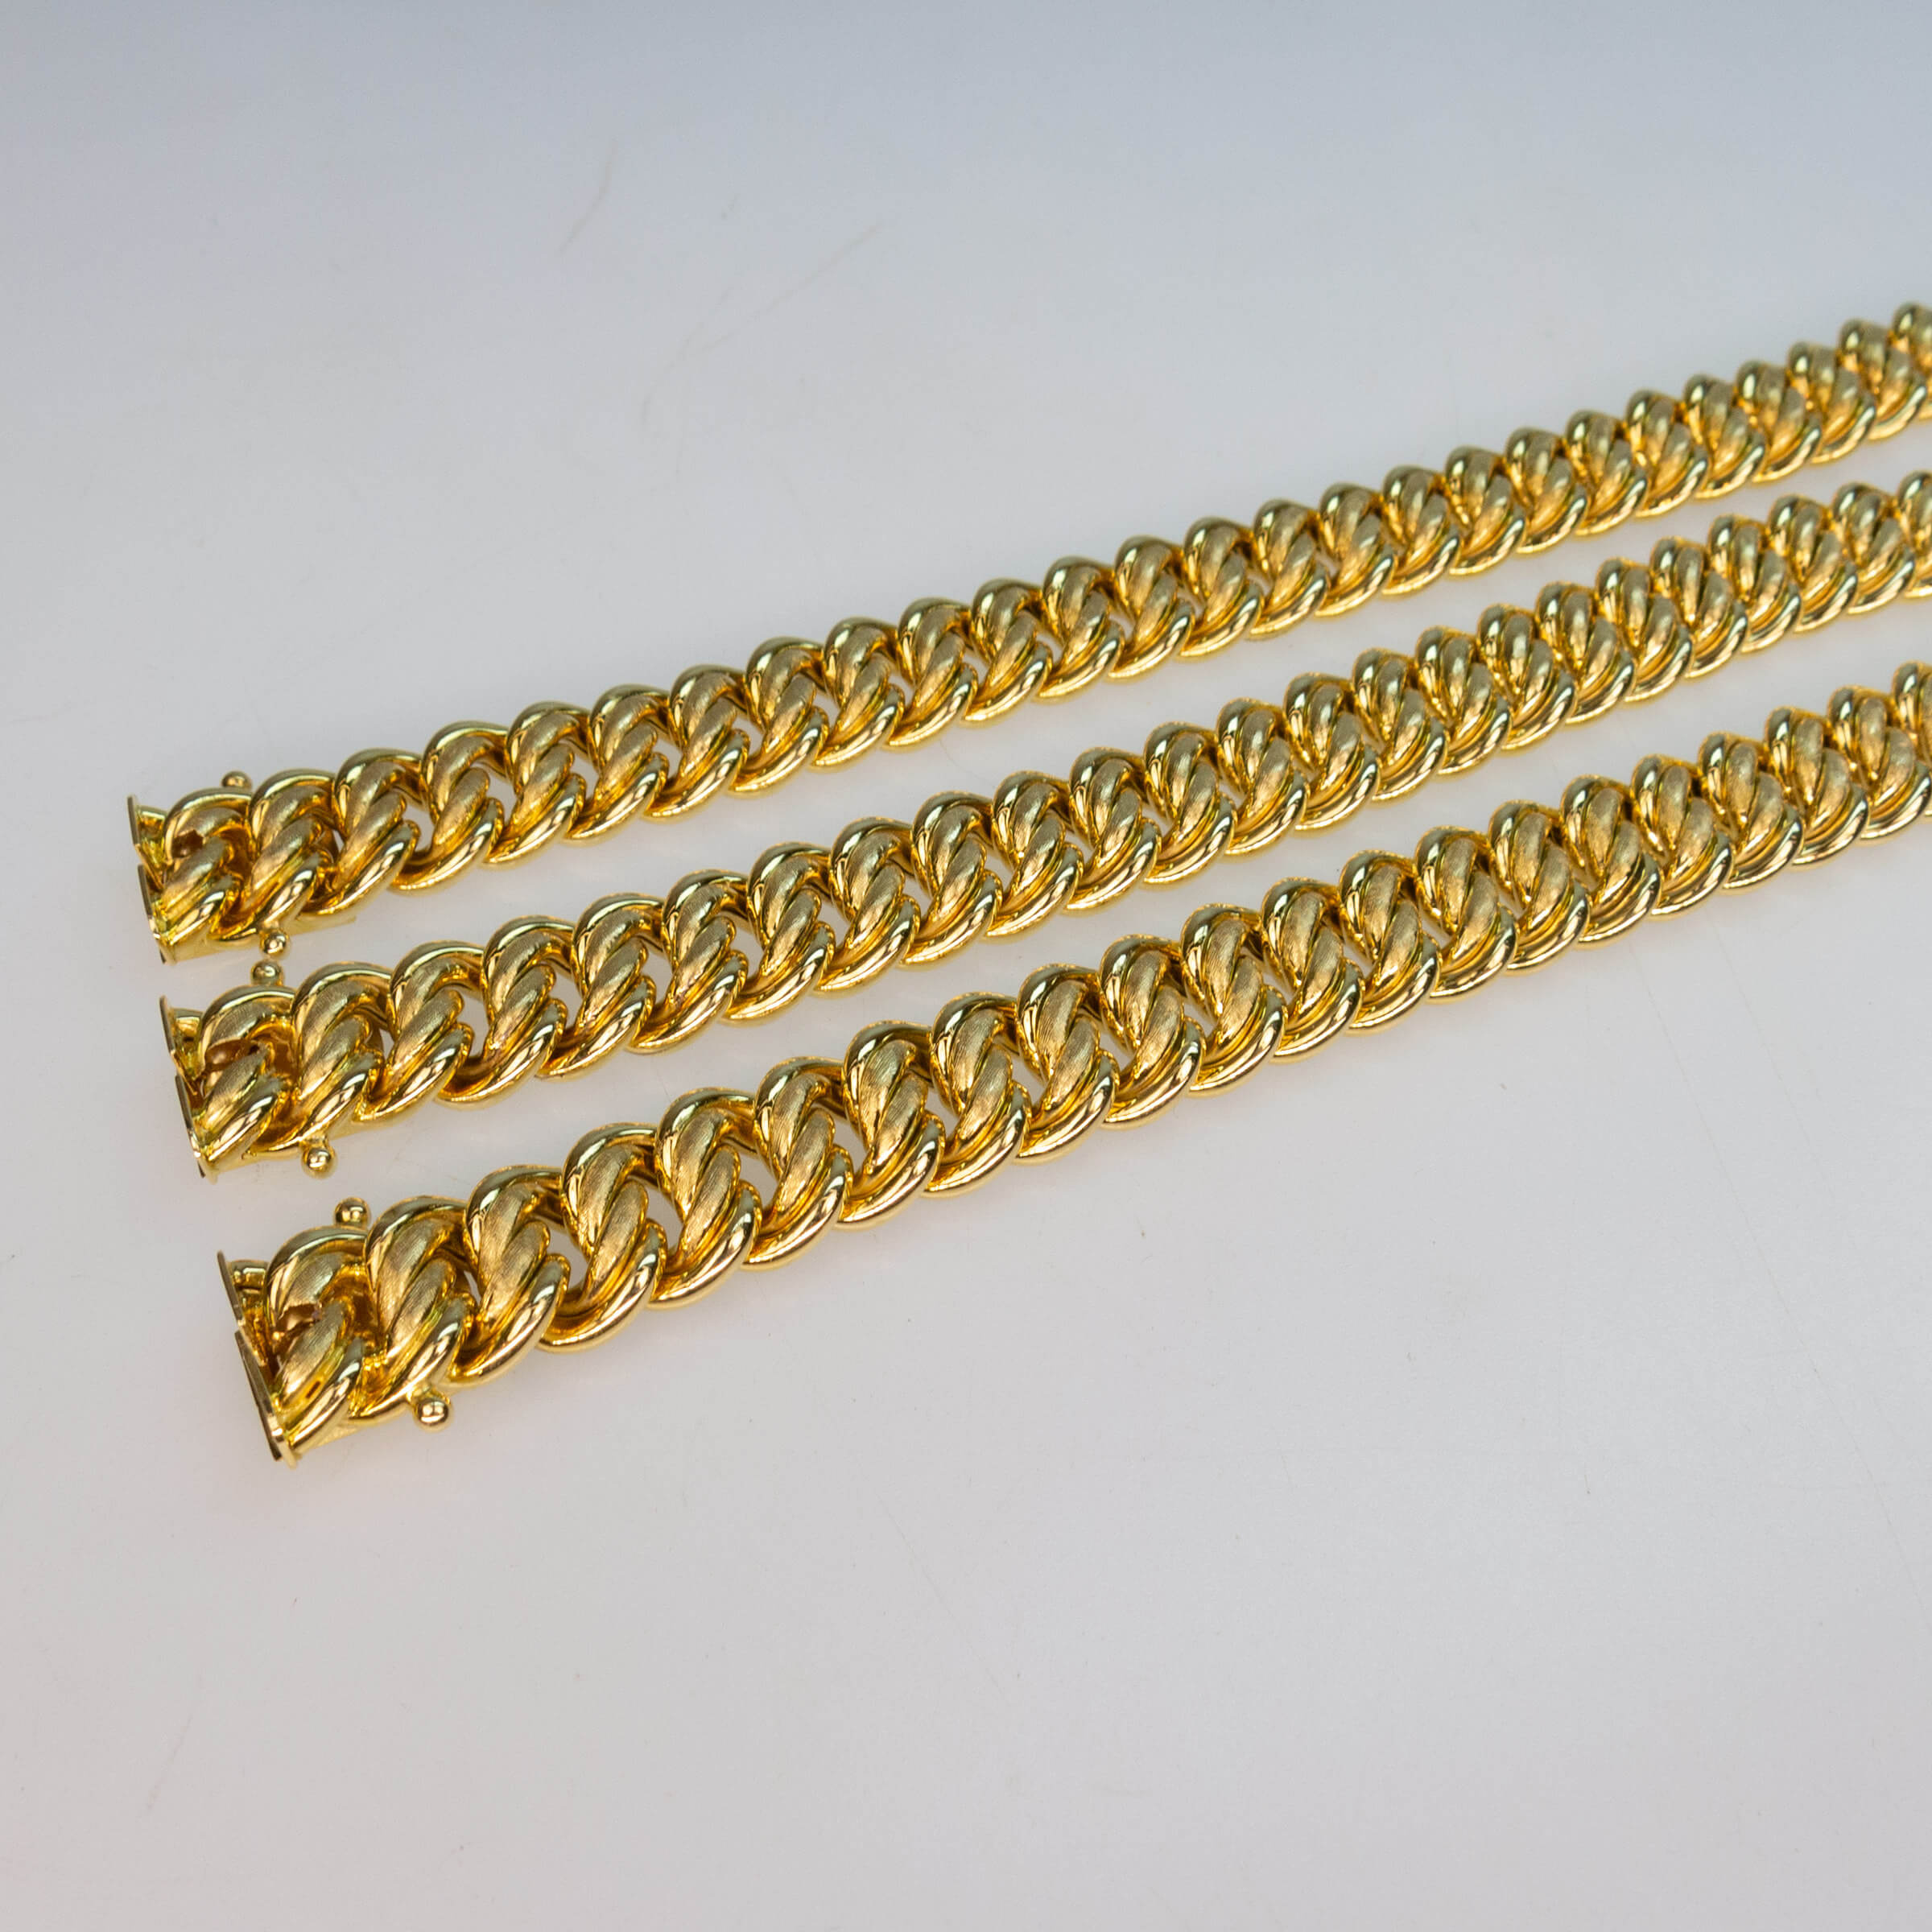 3 x 18k Yellow Gold Bracelets